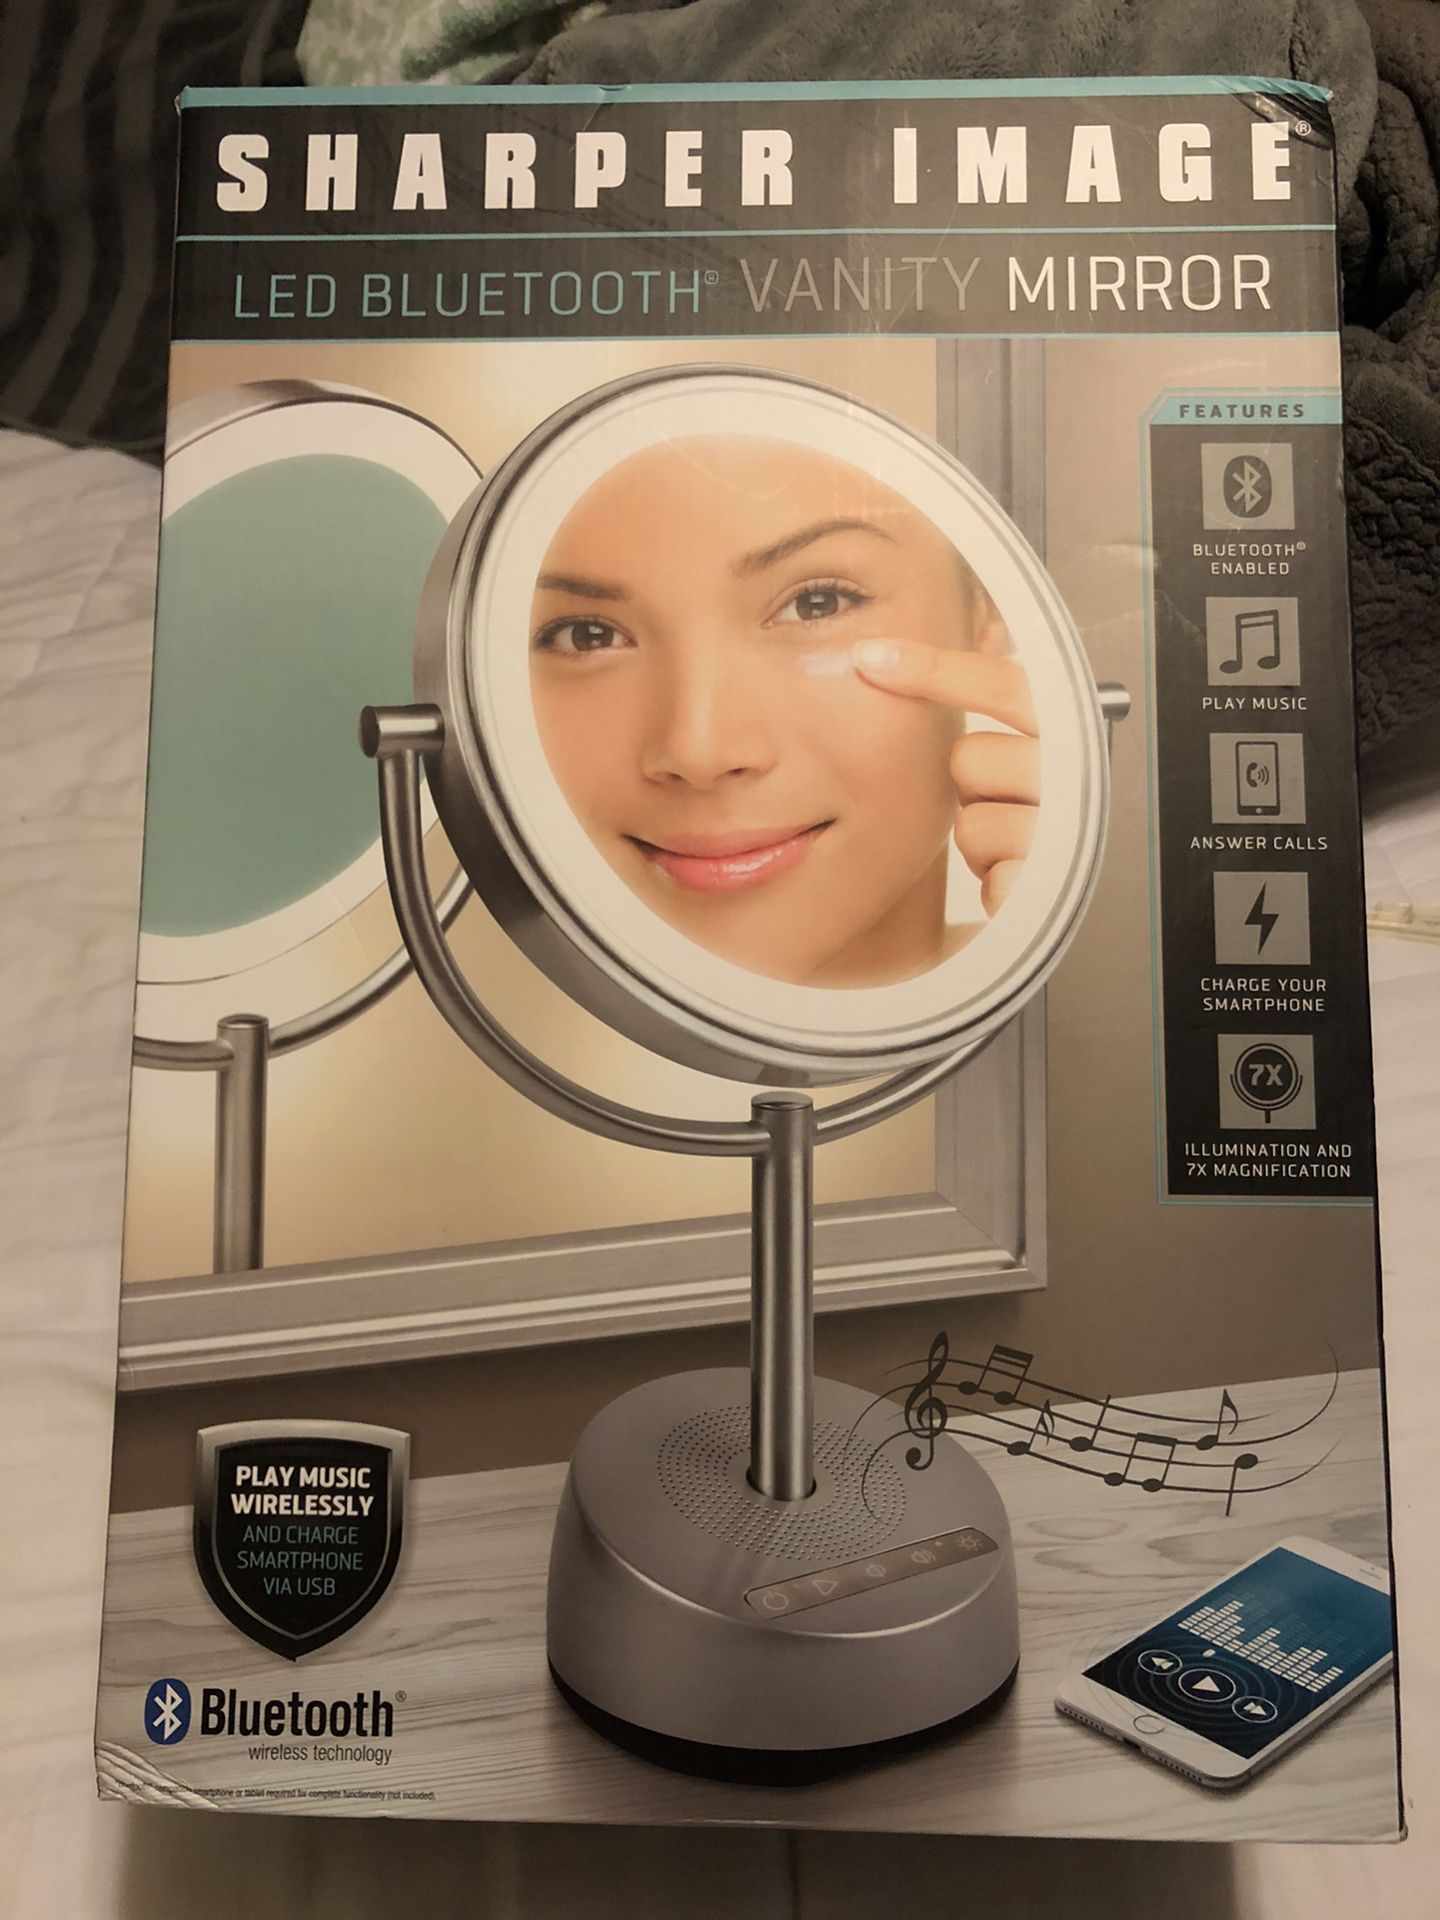 Led Bluetooth vanity mirror